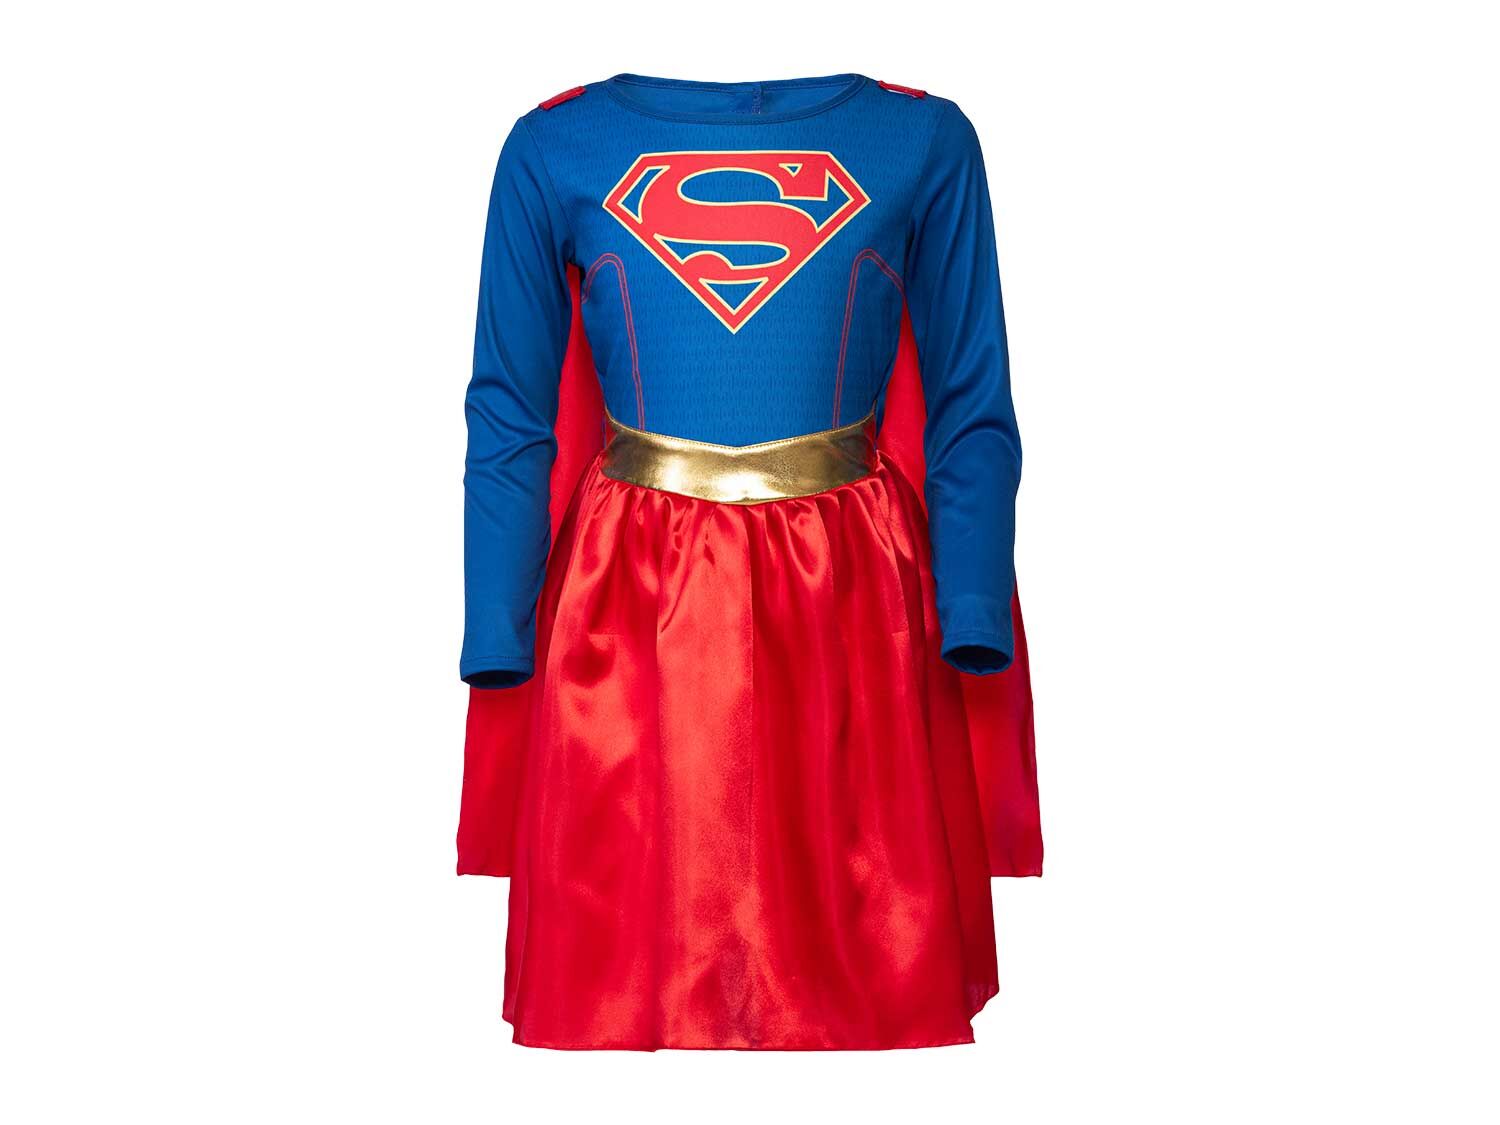 Disfraz infantil Supergirl / Batgirl / Wonder woman